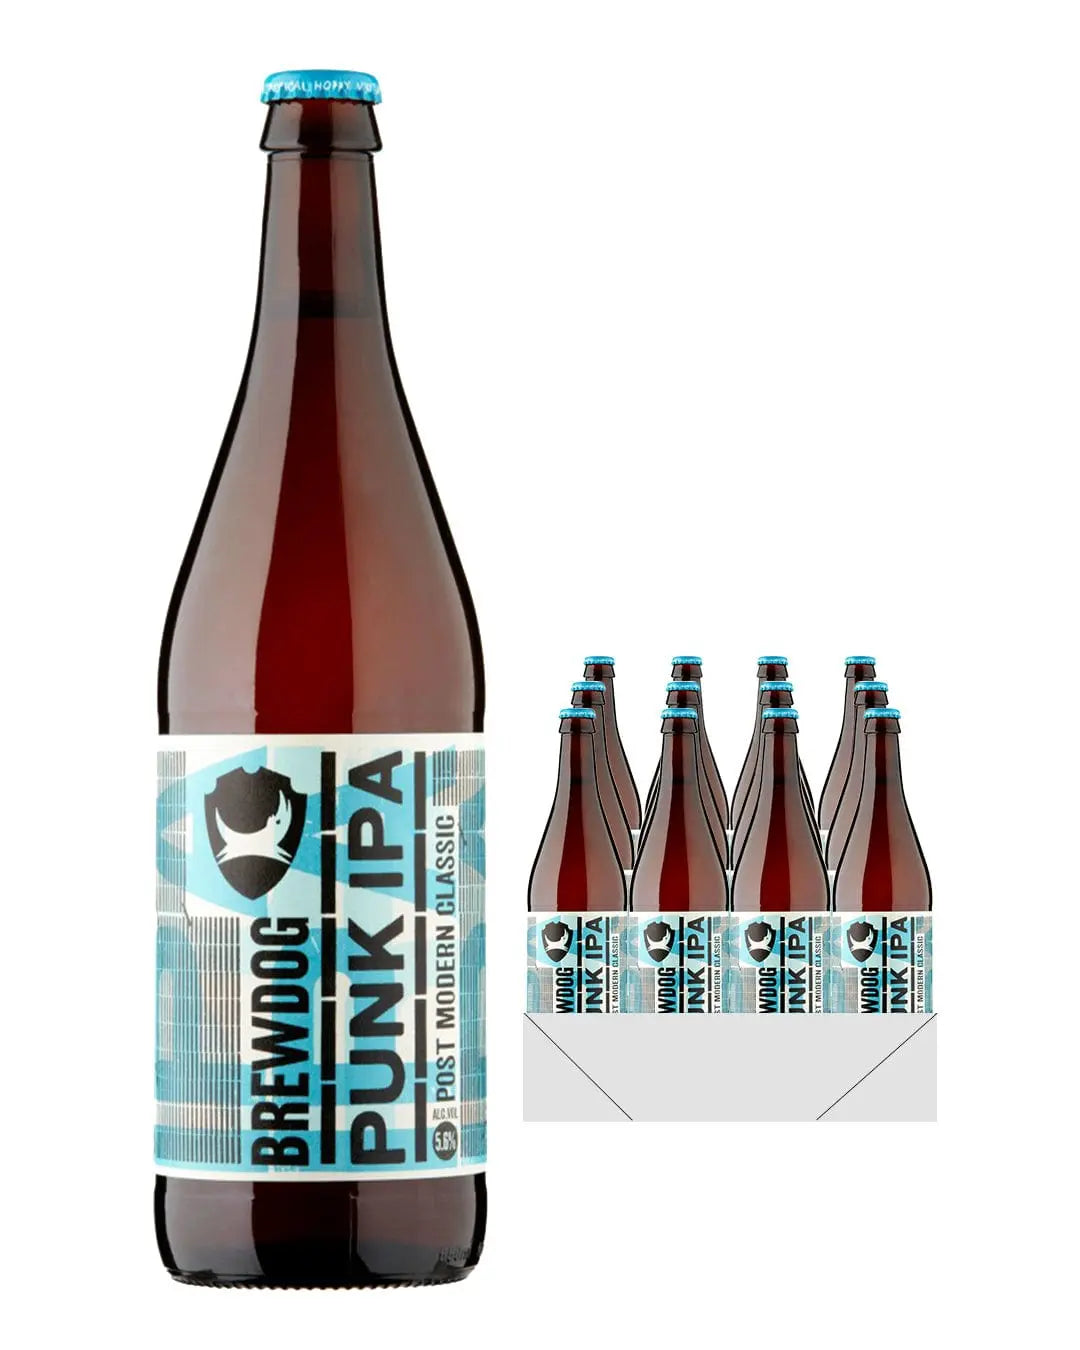 BrewDog Punk IPA Beer Bottle Multipack, 12 x 660 ml Beer 05056025440524